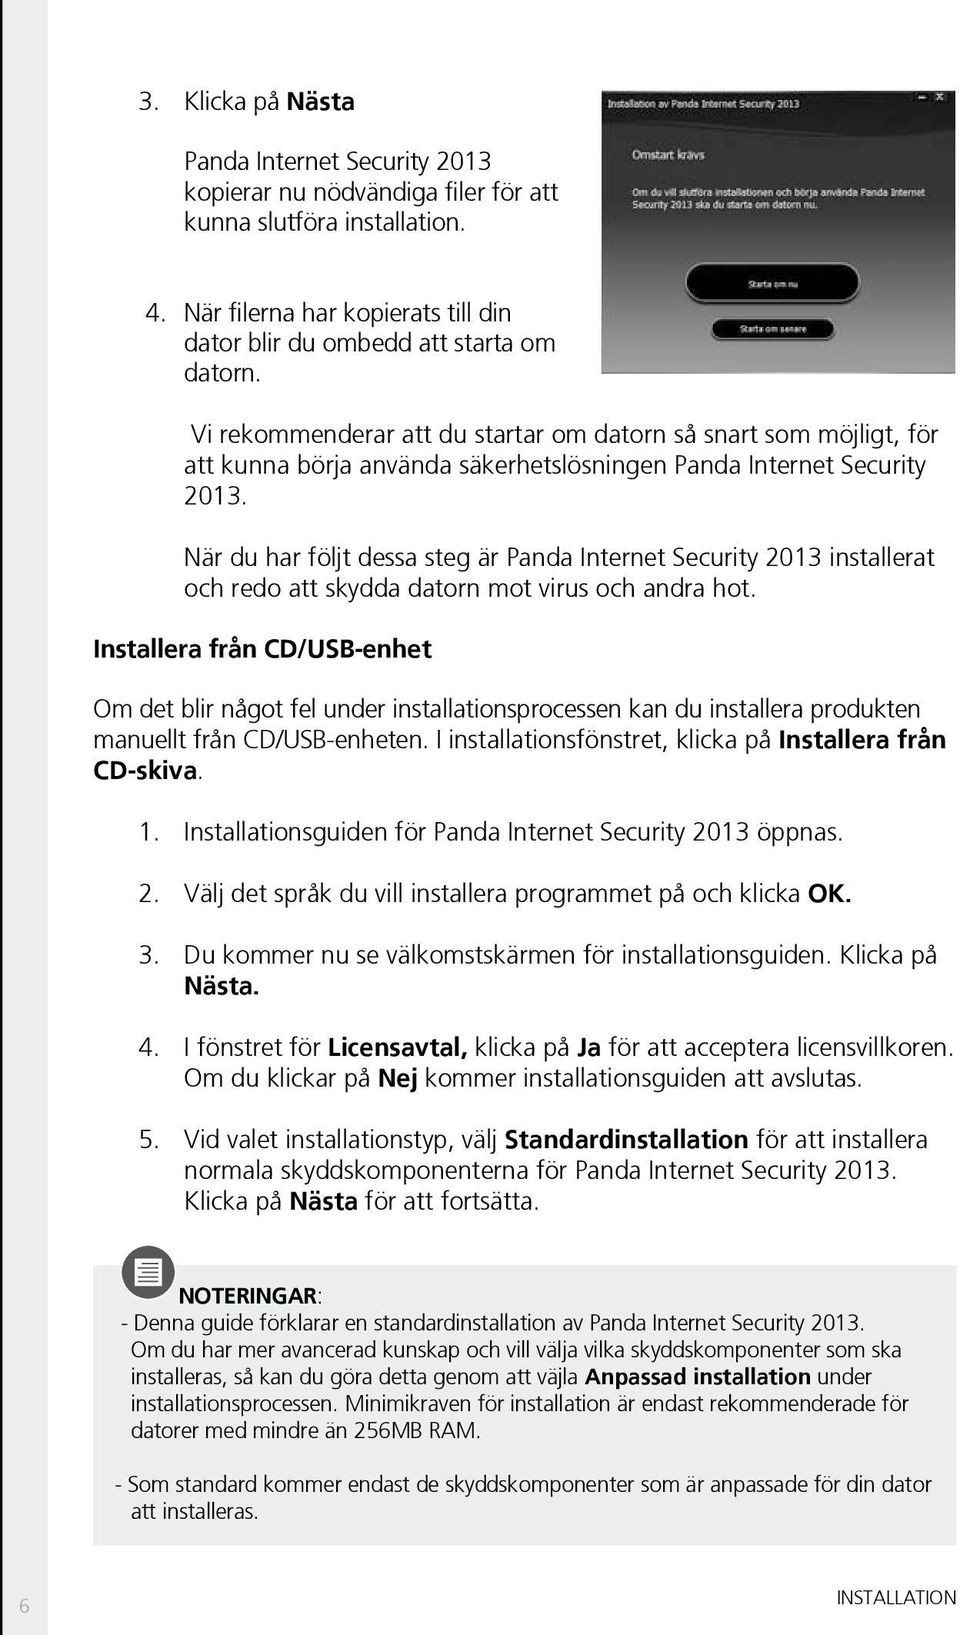 När du har följt dessa steg är Panda Internet Security 2013 installerat och redo att skydda datorn mot virus och andra hot.